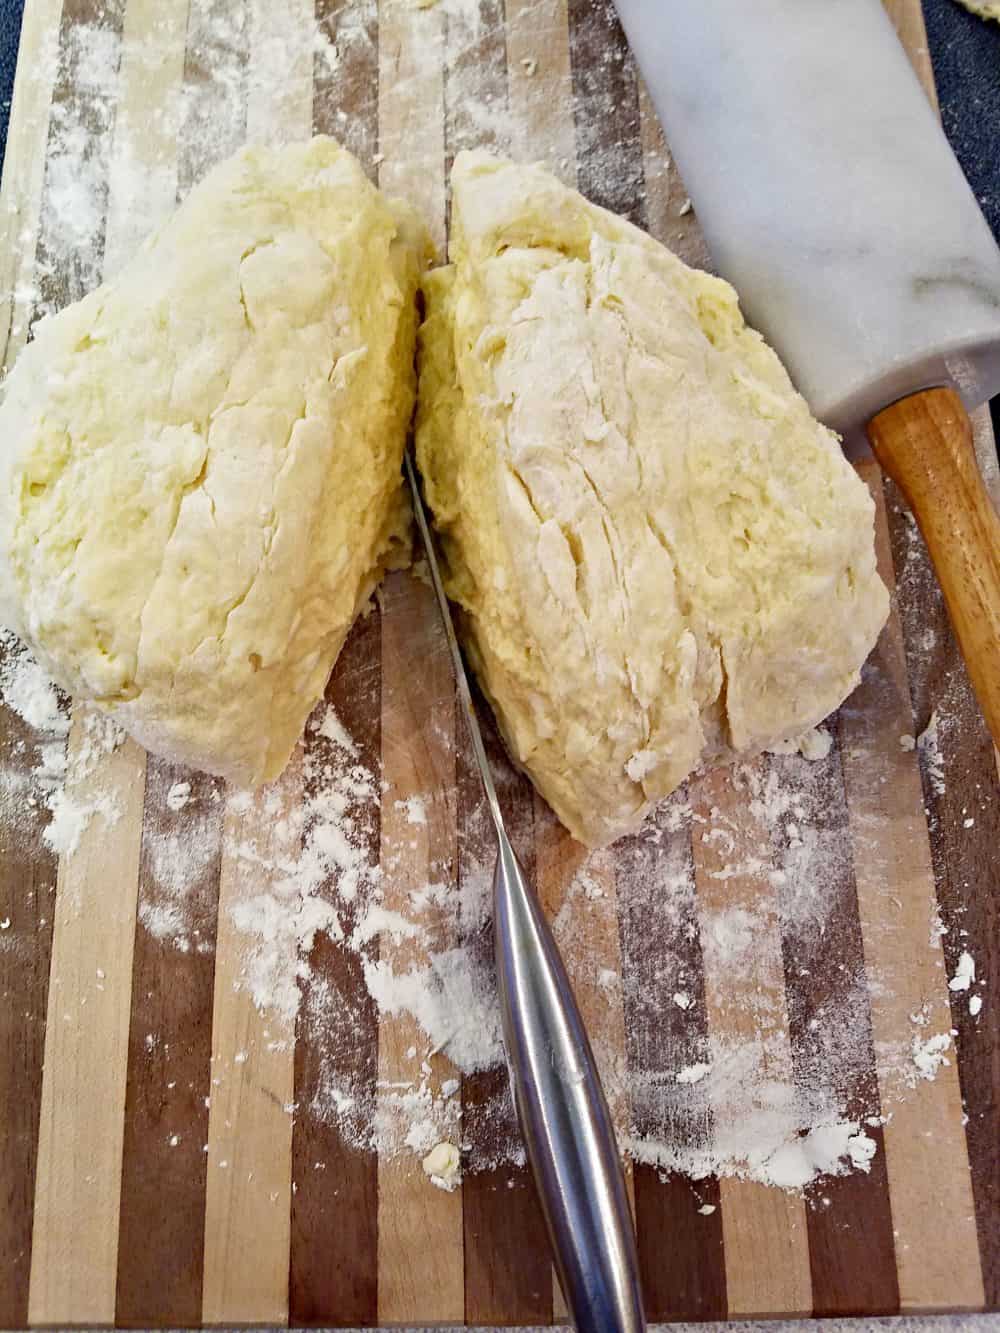 Biscuit dough cut in half from a Homemade Buttermilk Biscuits recipe.